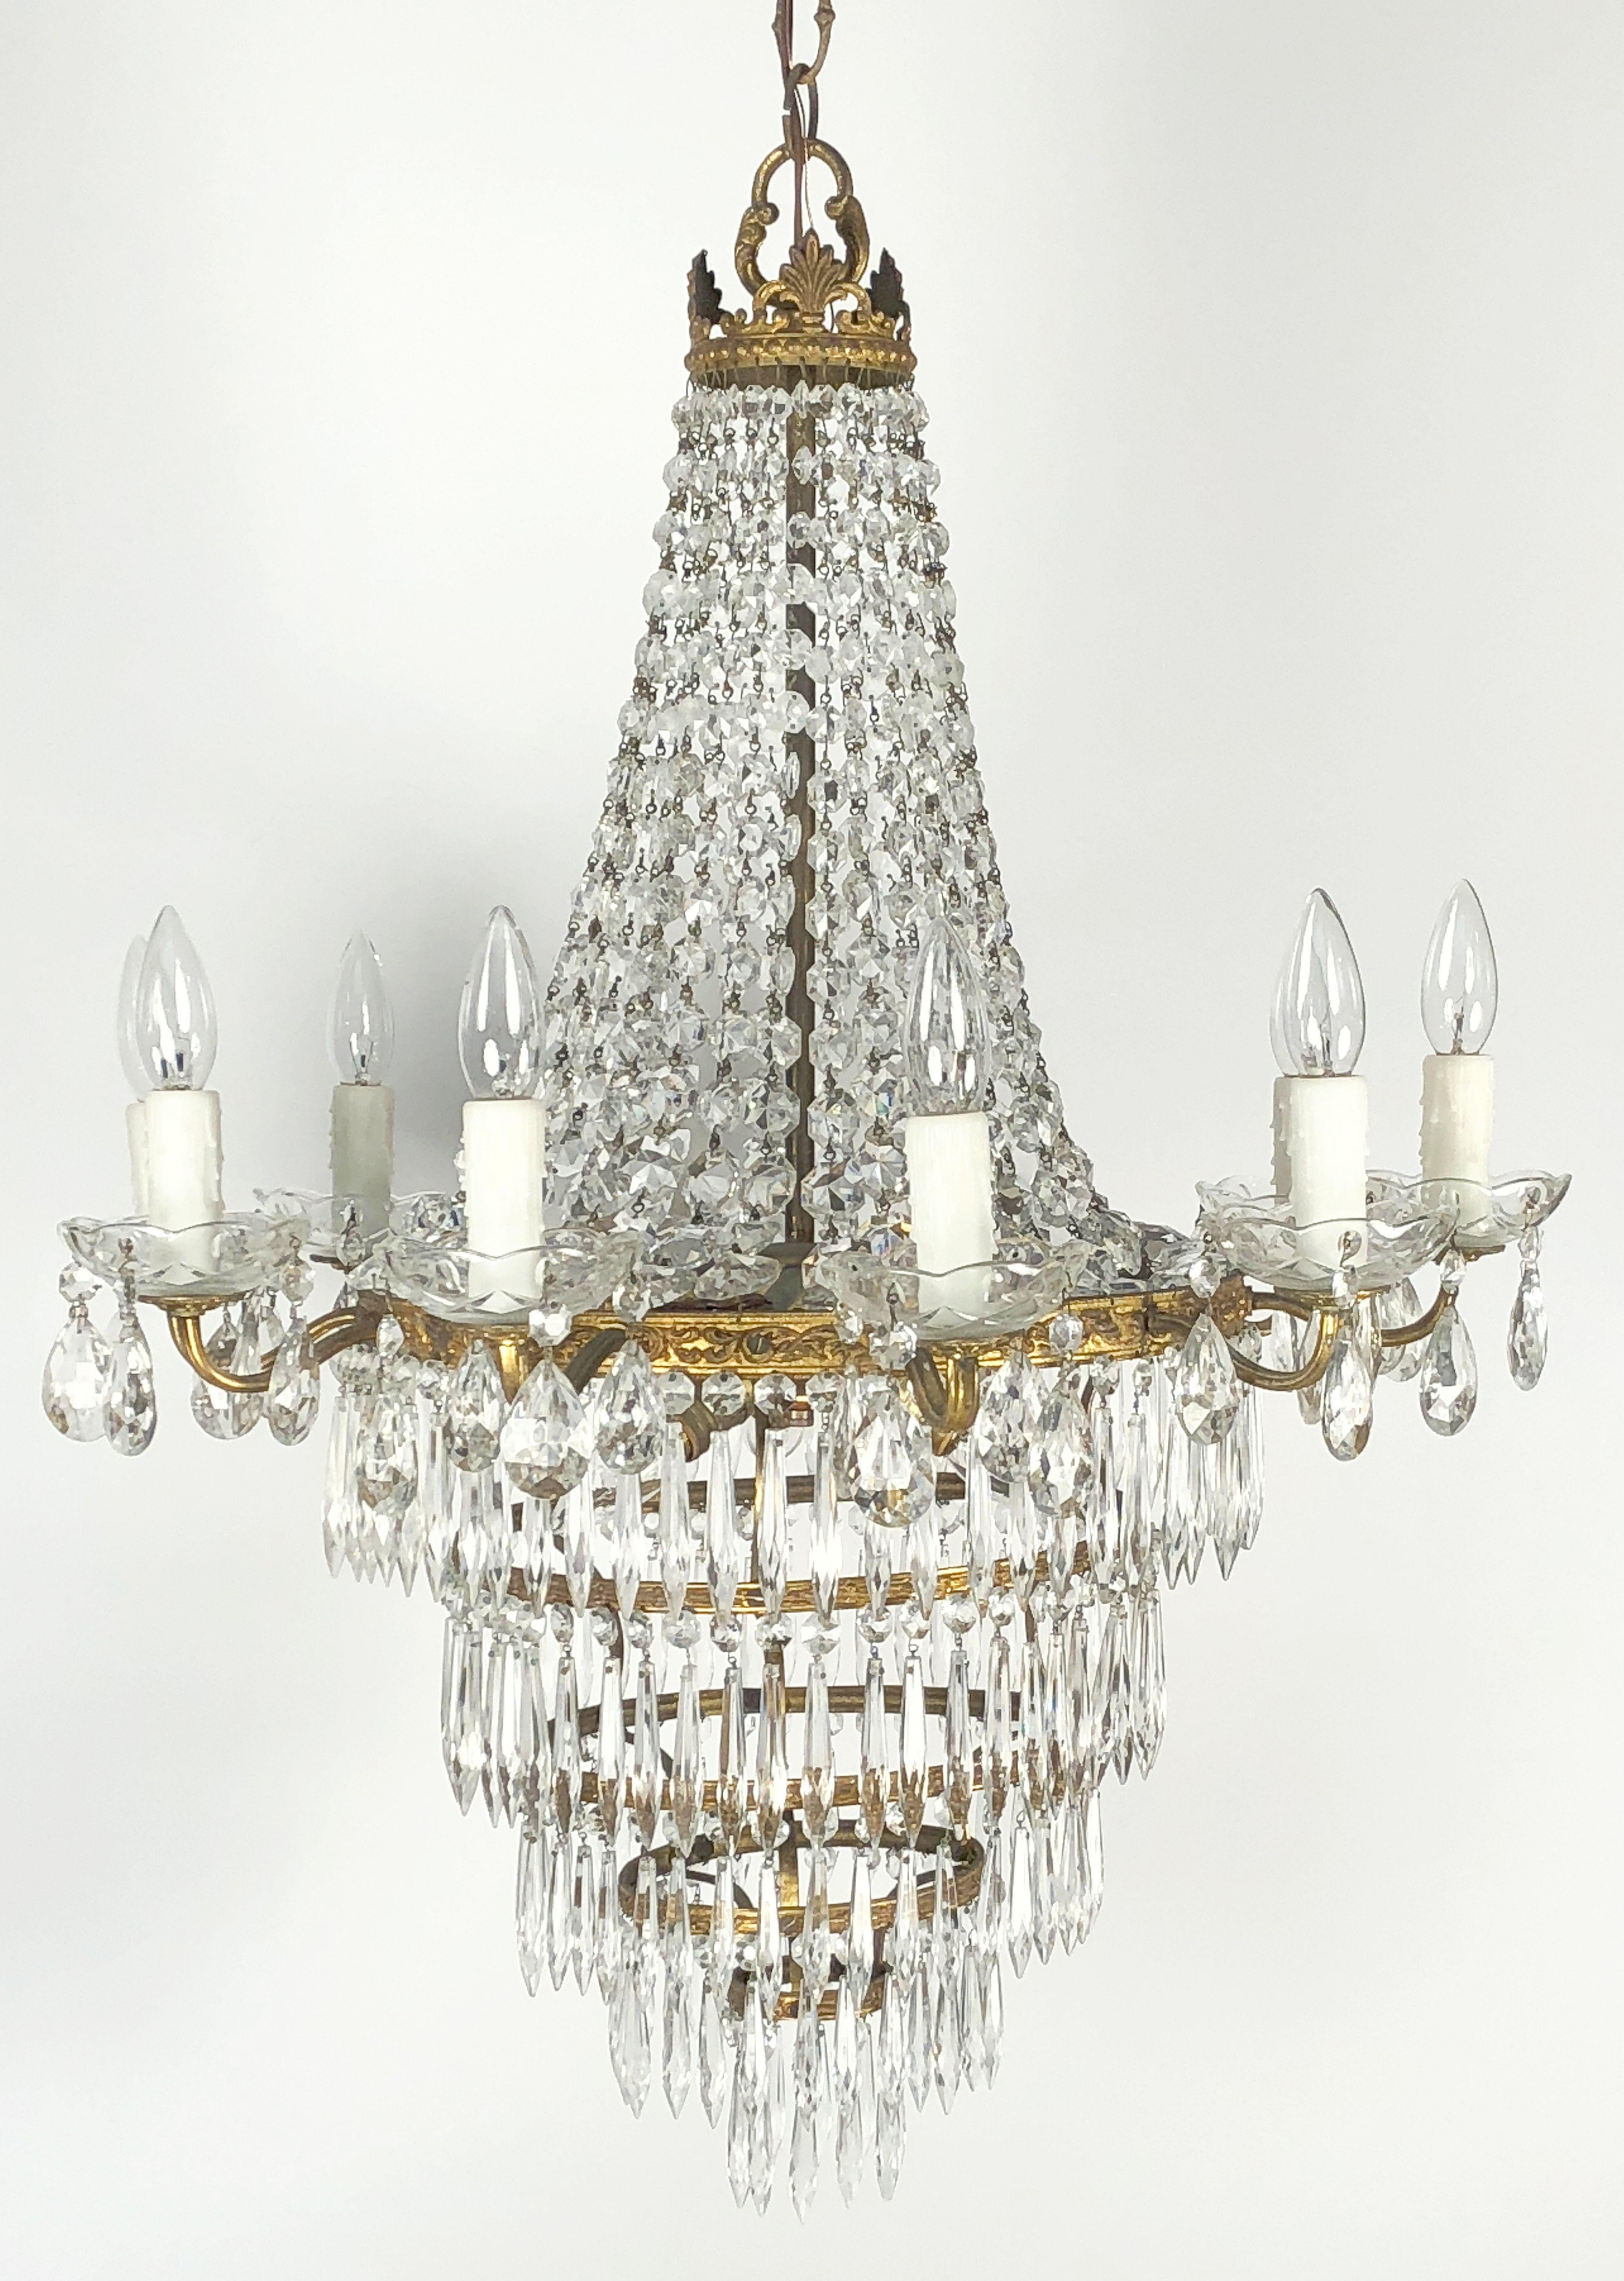 Eine schöne italienische dreizehn-Licht-Hängeleuchte oder Kronleuchter aus vergoldetem Metall und Kristalle, in der Empire-Stil, mit einer Krone über kaskadierende Anhänger, mit einem Ring von zehn Lichter rund um den Umfang, die eine drei